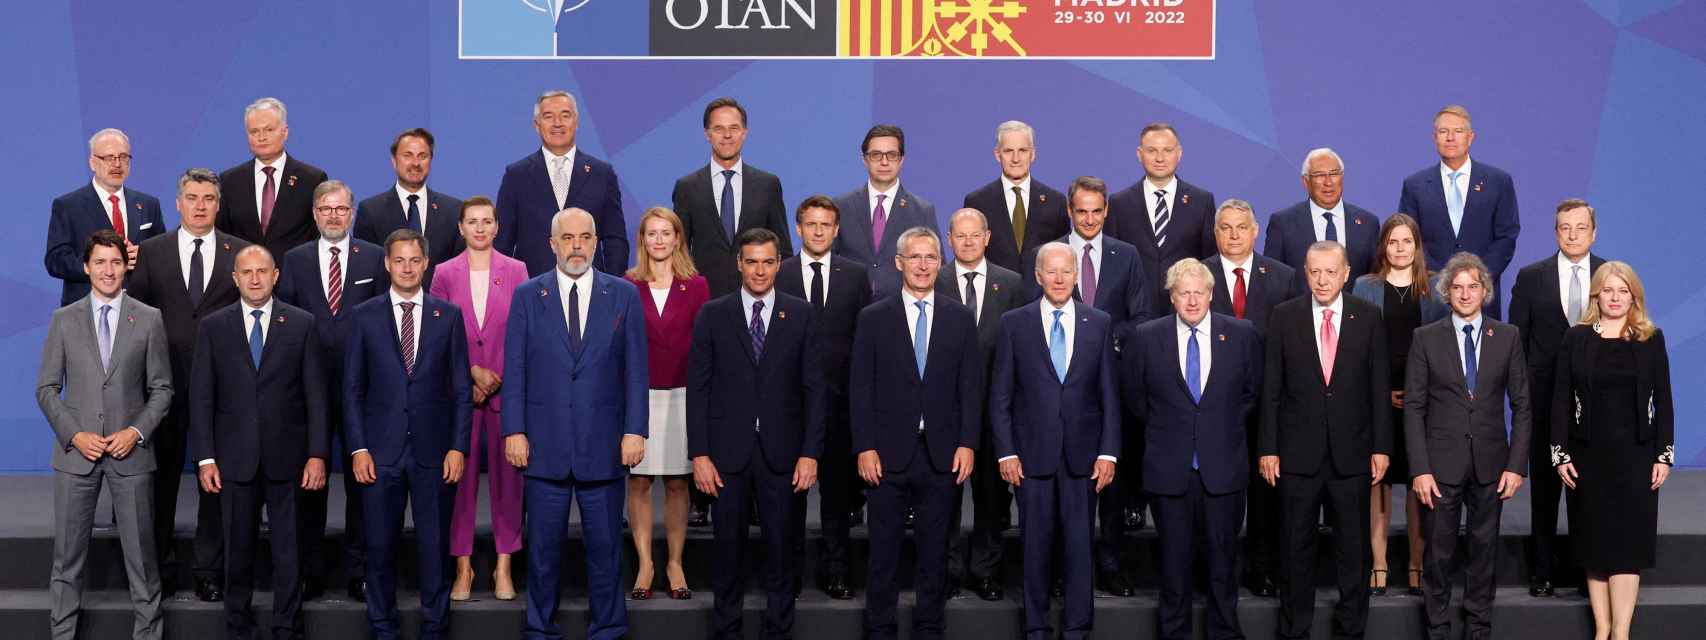 La foto de familia que marca el inicio oficial de la Cumbre de la OTAN.